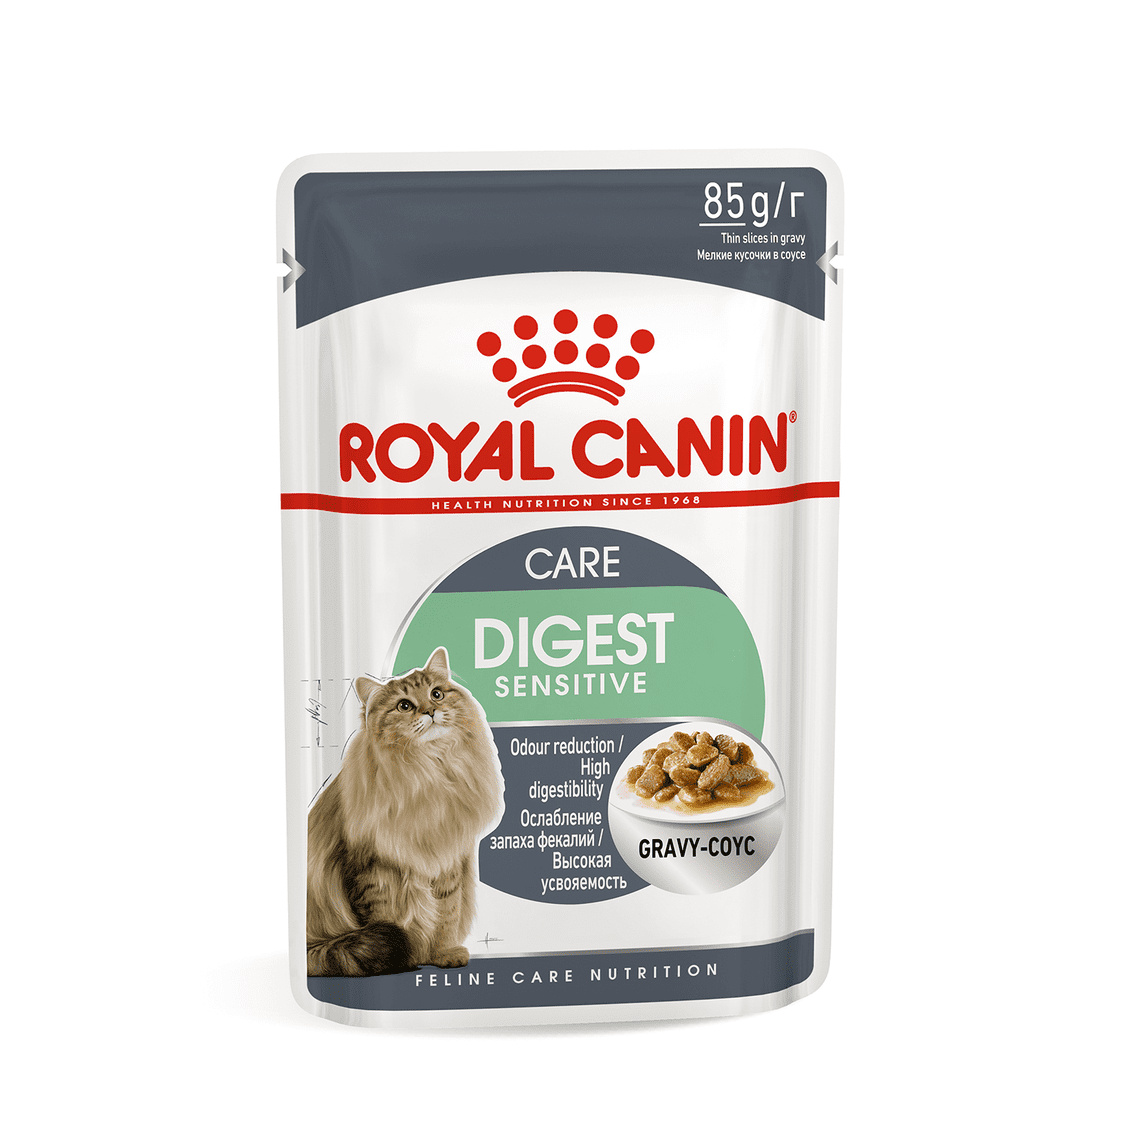 Royal Canin паучи Royal Canin паучи кусочки в соусе для кошек 1-10 лет Отличное пищеварение (1 шт.) royal canin паучи royal canin паучи кусочки в соусе для кошек 1 7 лет 85 г